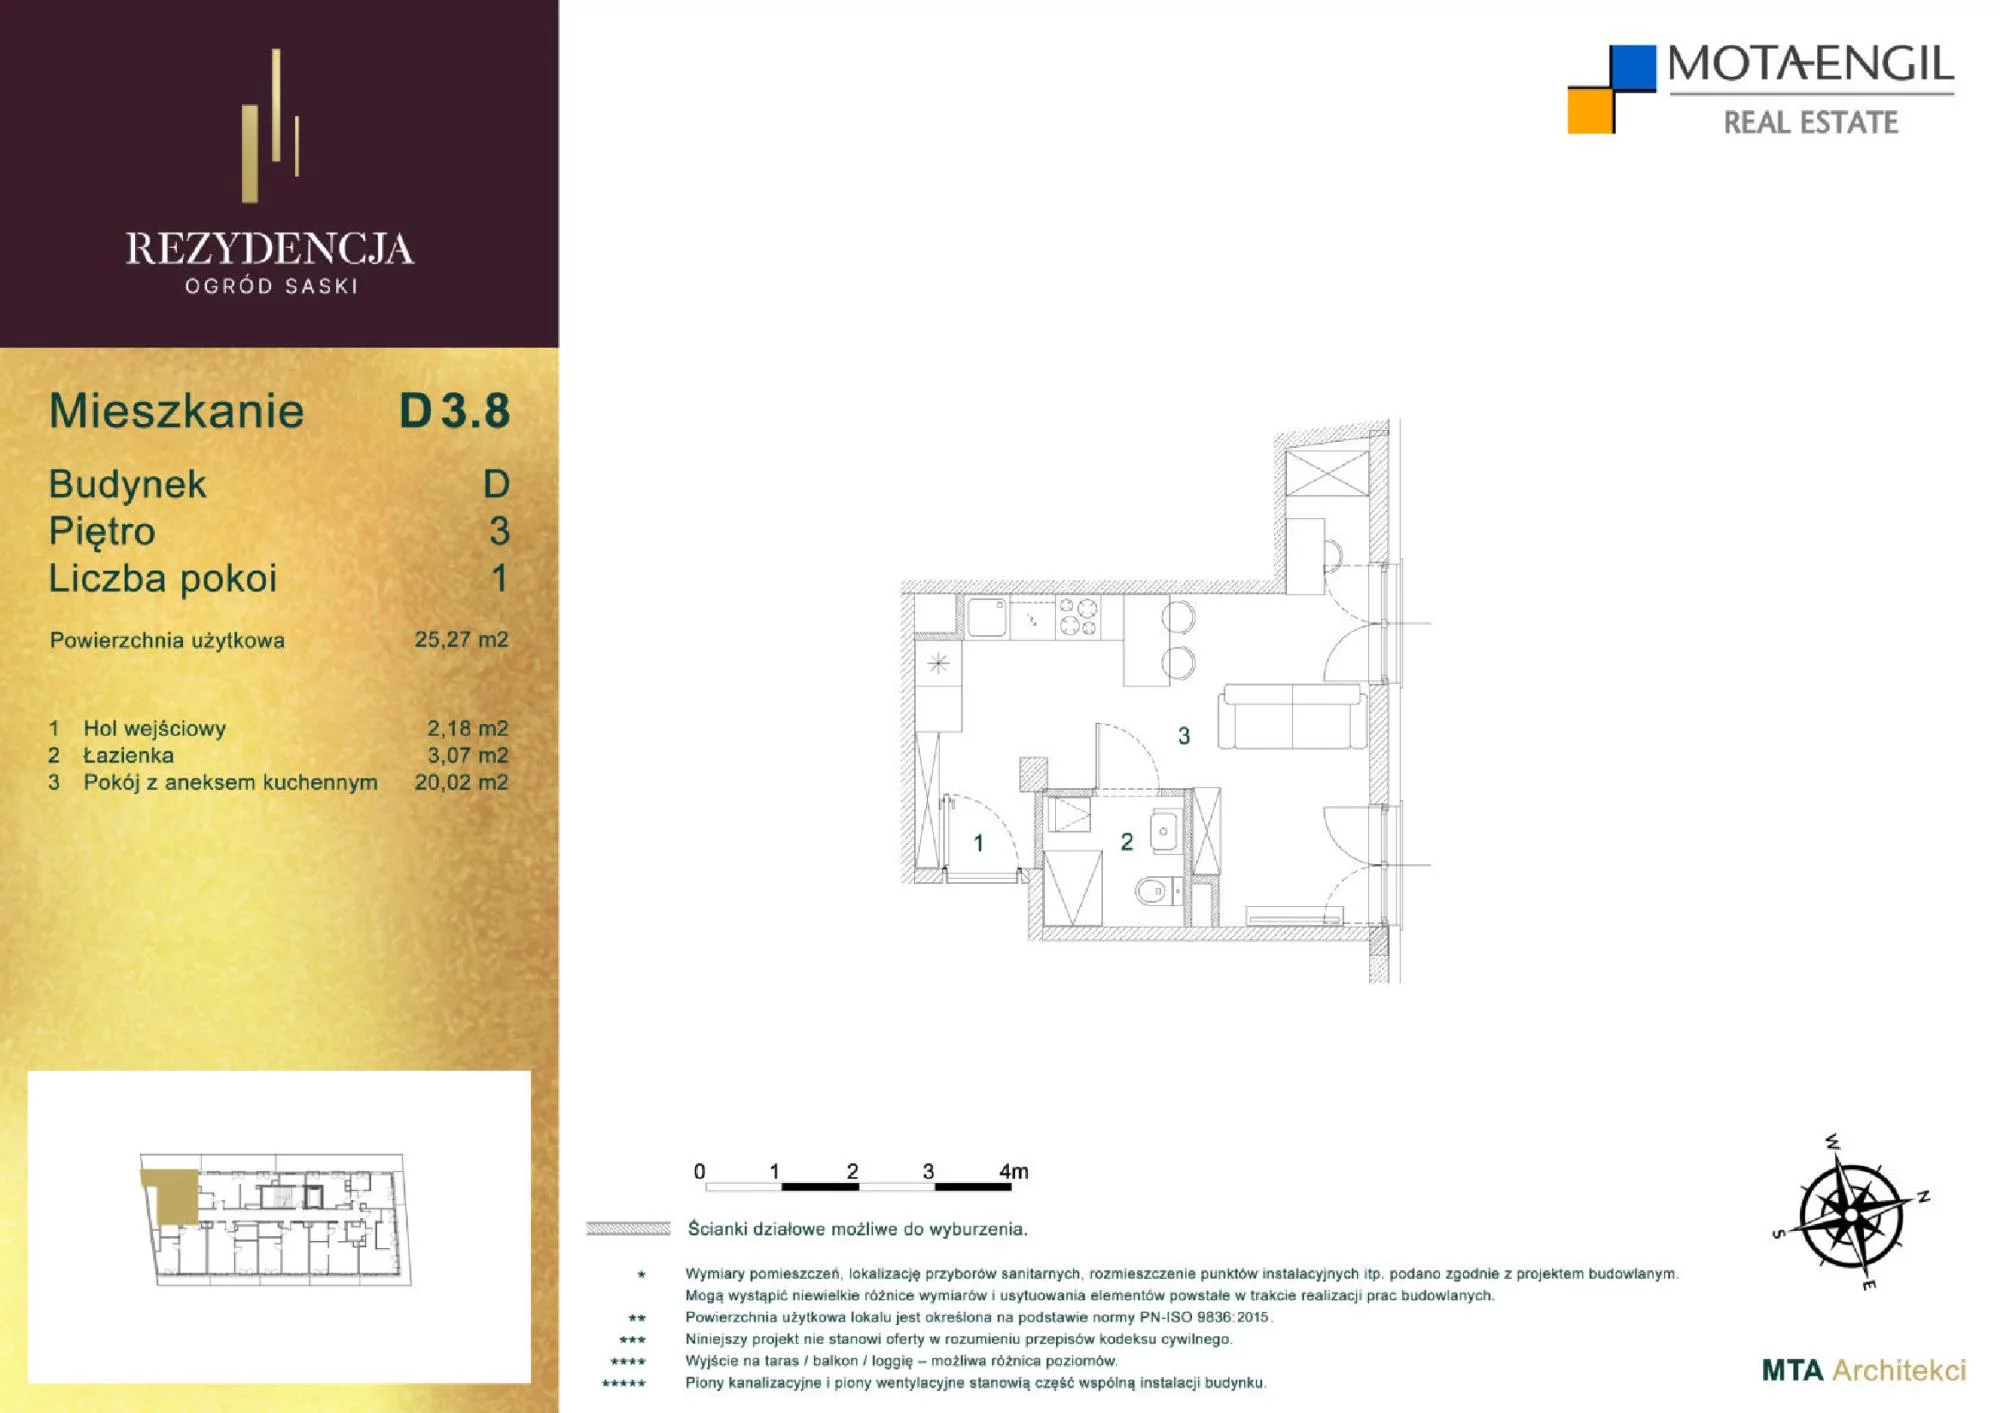 Mieszkanie 25,27 m², piętro 3, oferta nr D3.8, Rezydencja Ogród Saski, Lublin, Wieniawa, ul. Jasna 7, 7A